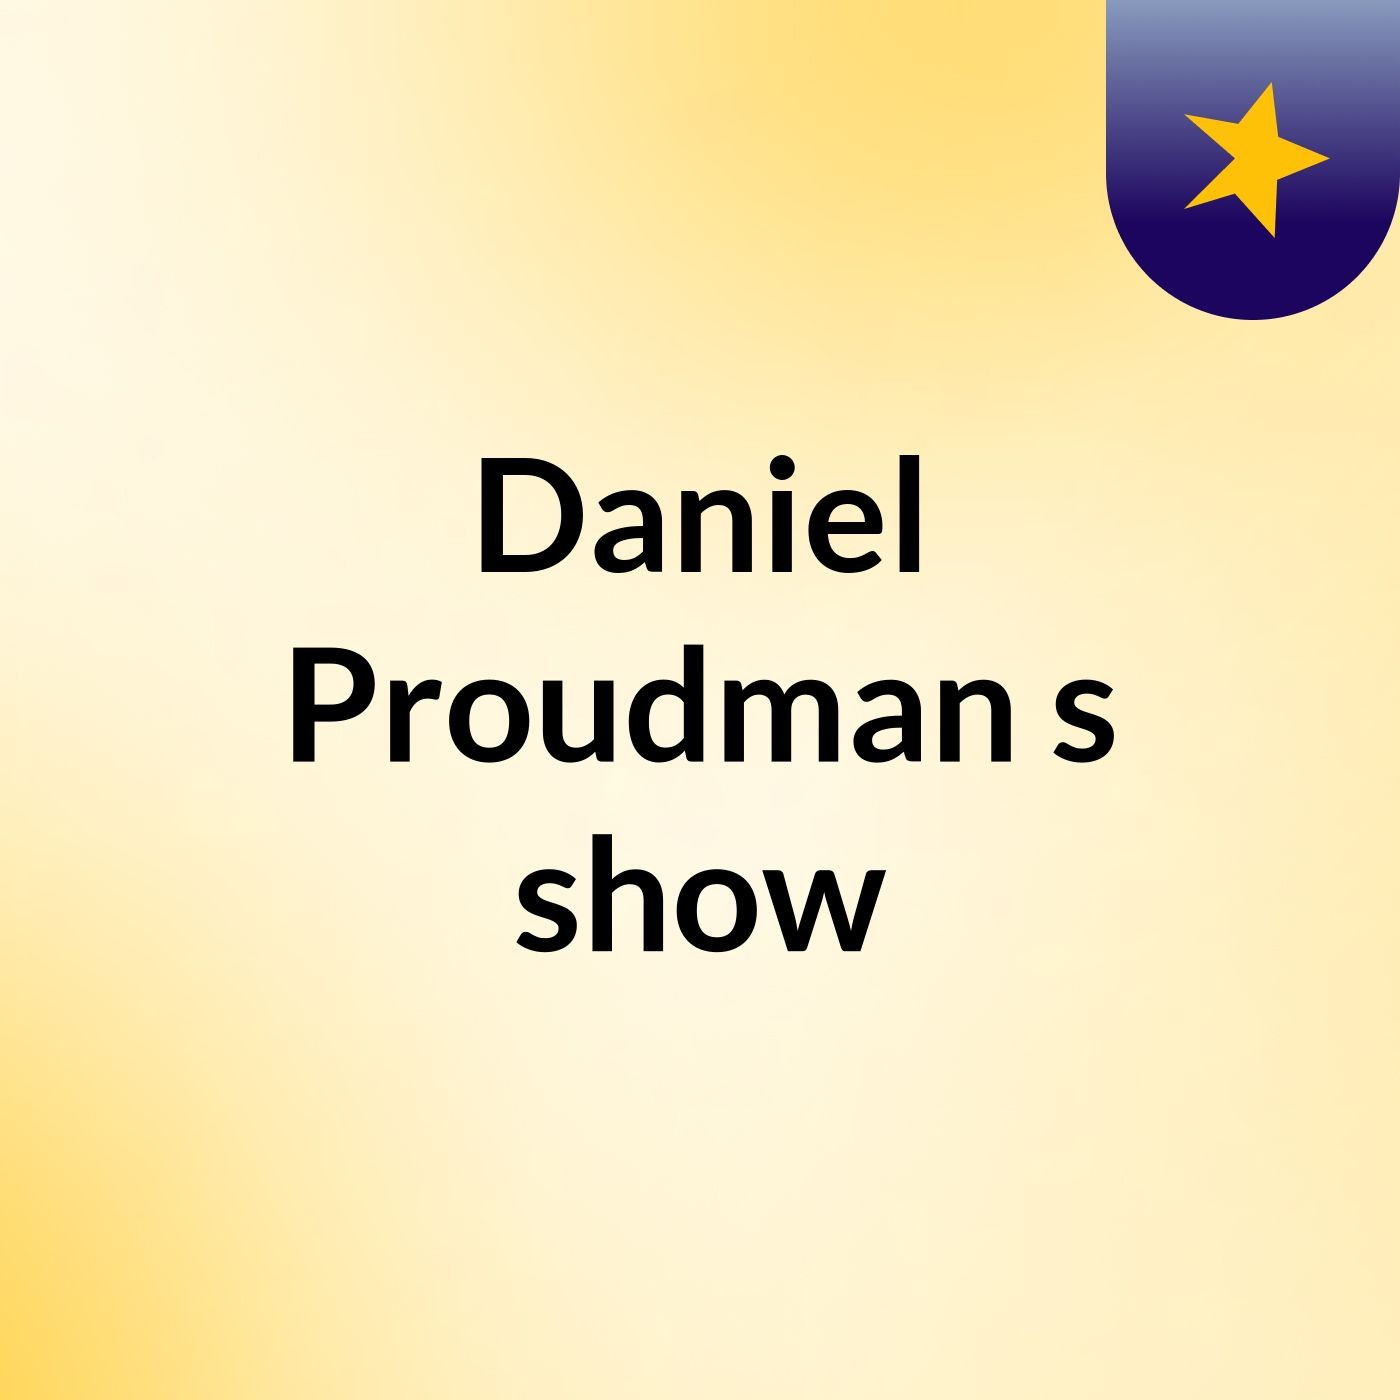 Daniel Proudman's show